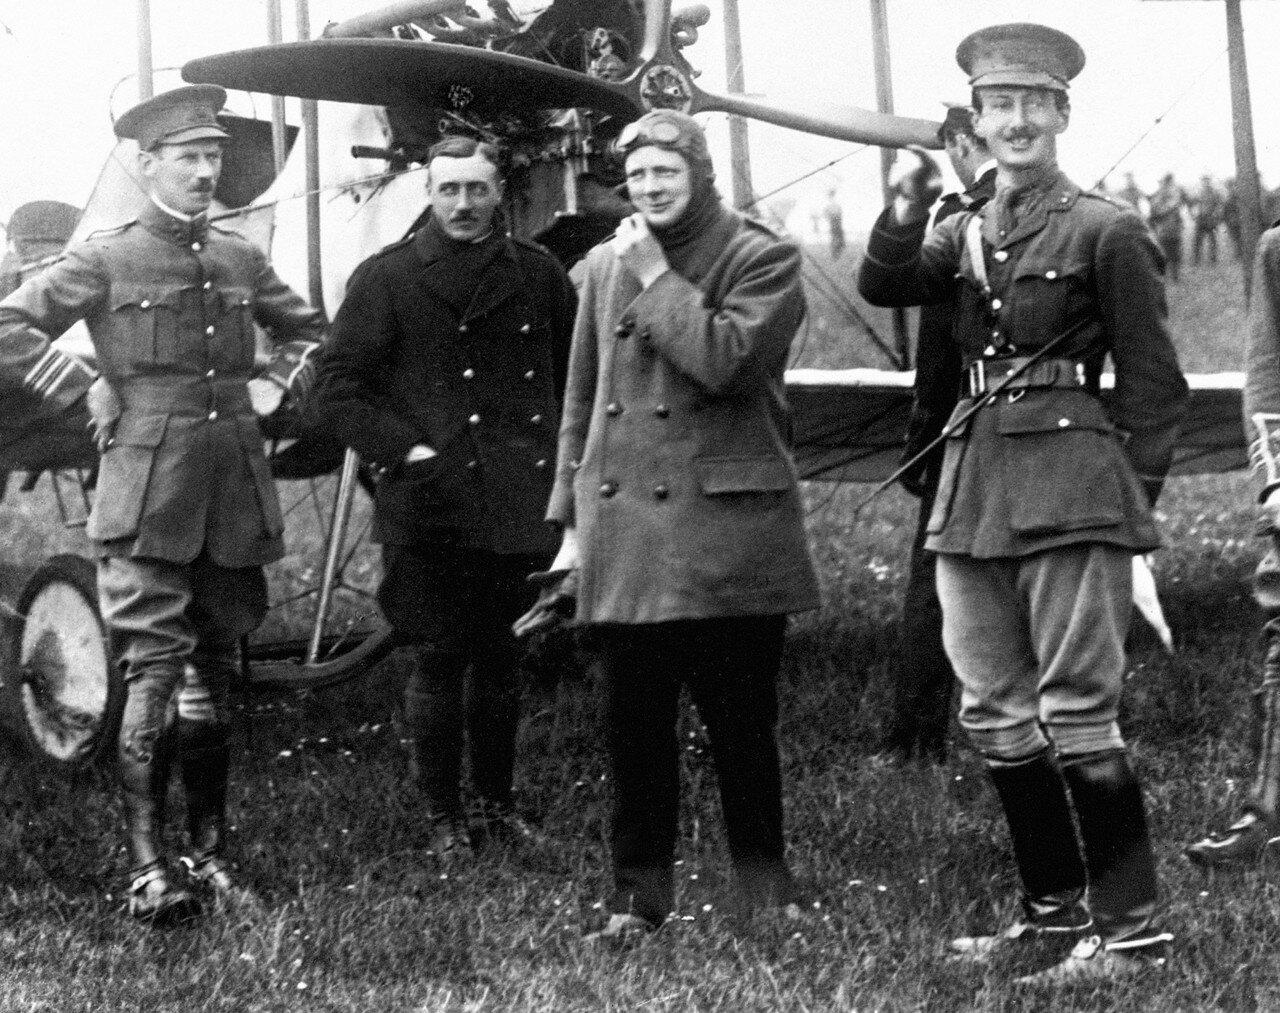 1914. Уинстон Черчилль, первый лорд адмиралтейства прибыл в Портсмут совершив двадцатиминутный полет на самолете, пилотируемом майором Джеррардом. Апрель